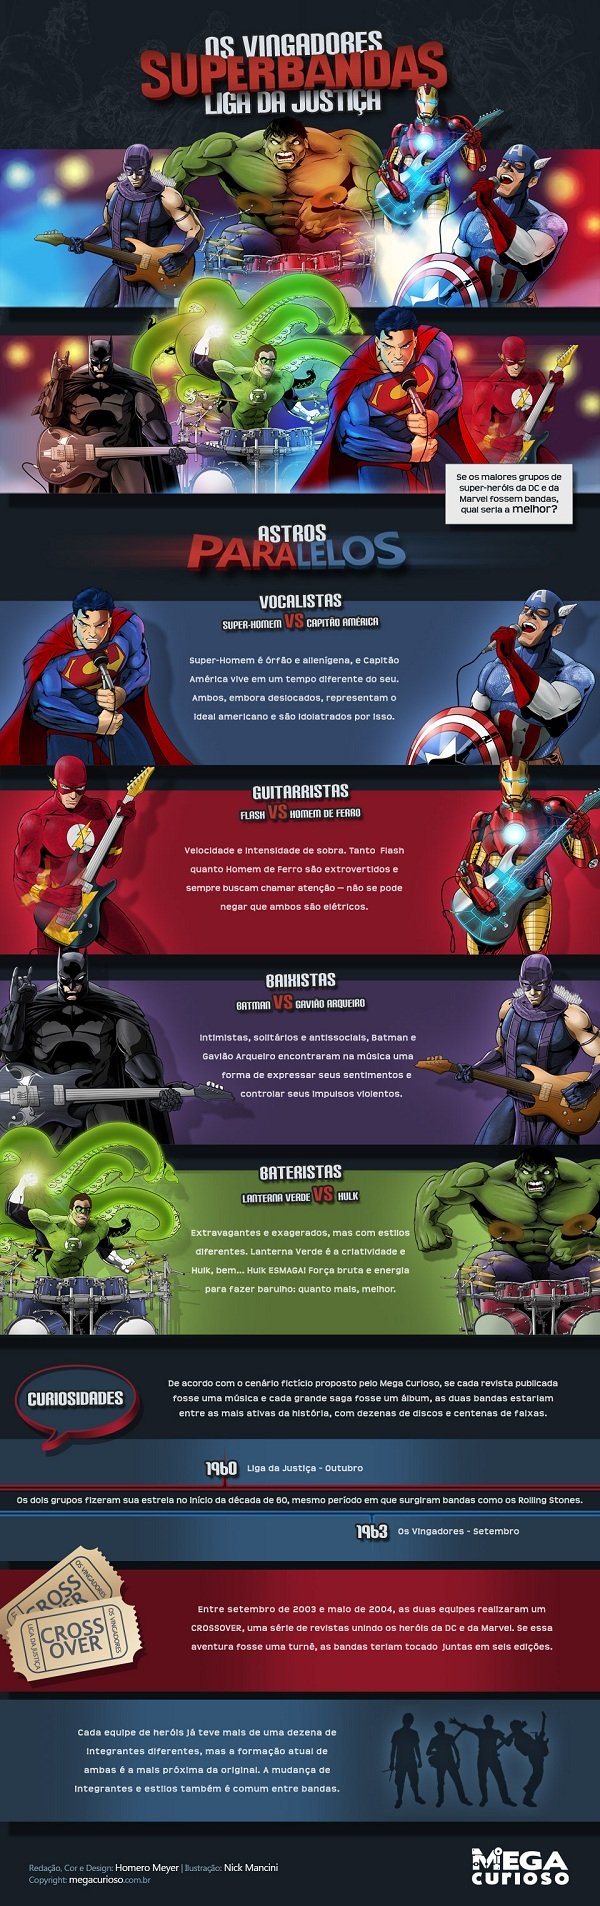 Superbandas - Os Vingadores x Liga da Justiça